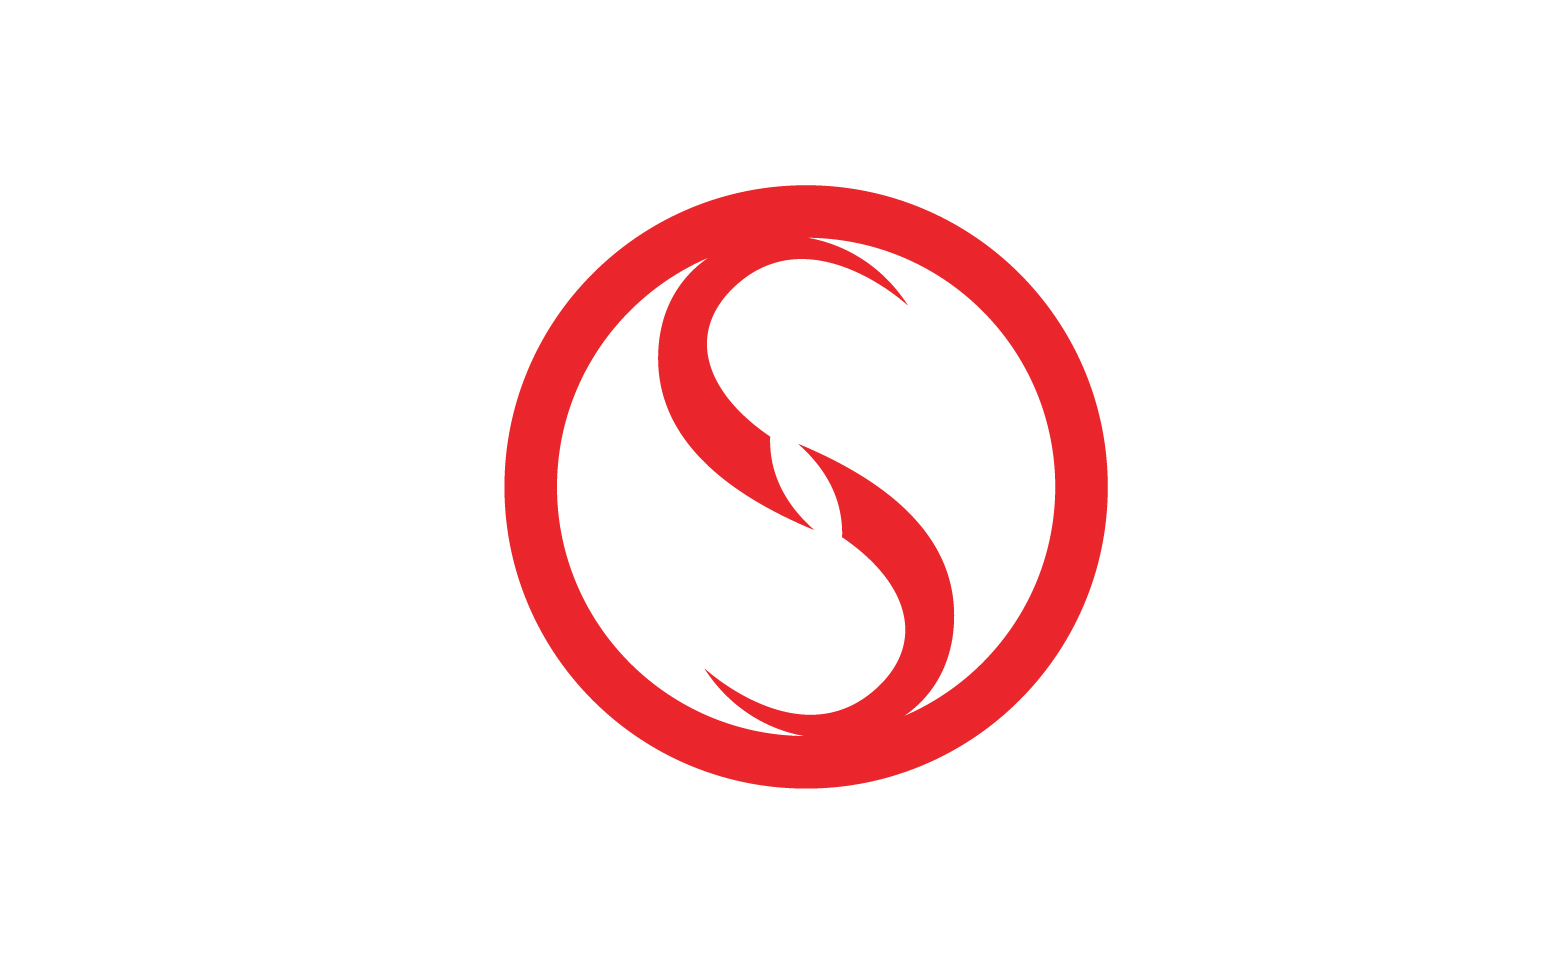 Business letter s initial logo v8